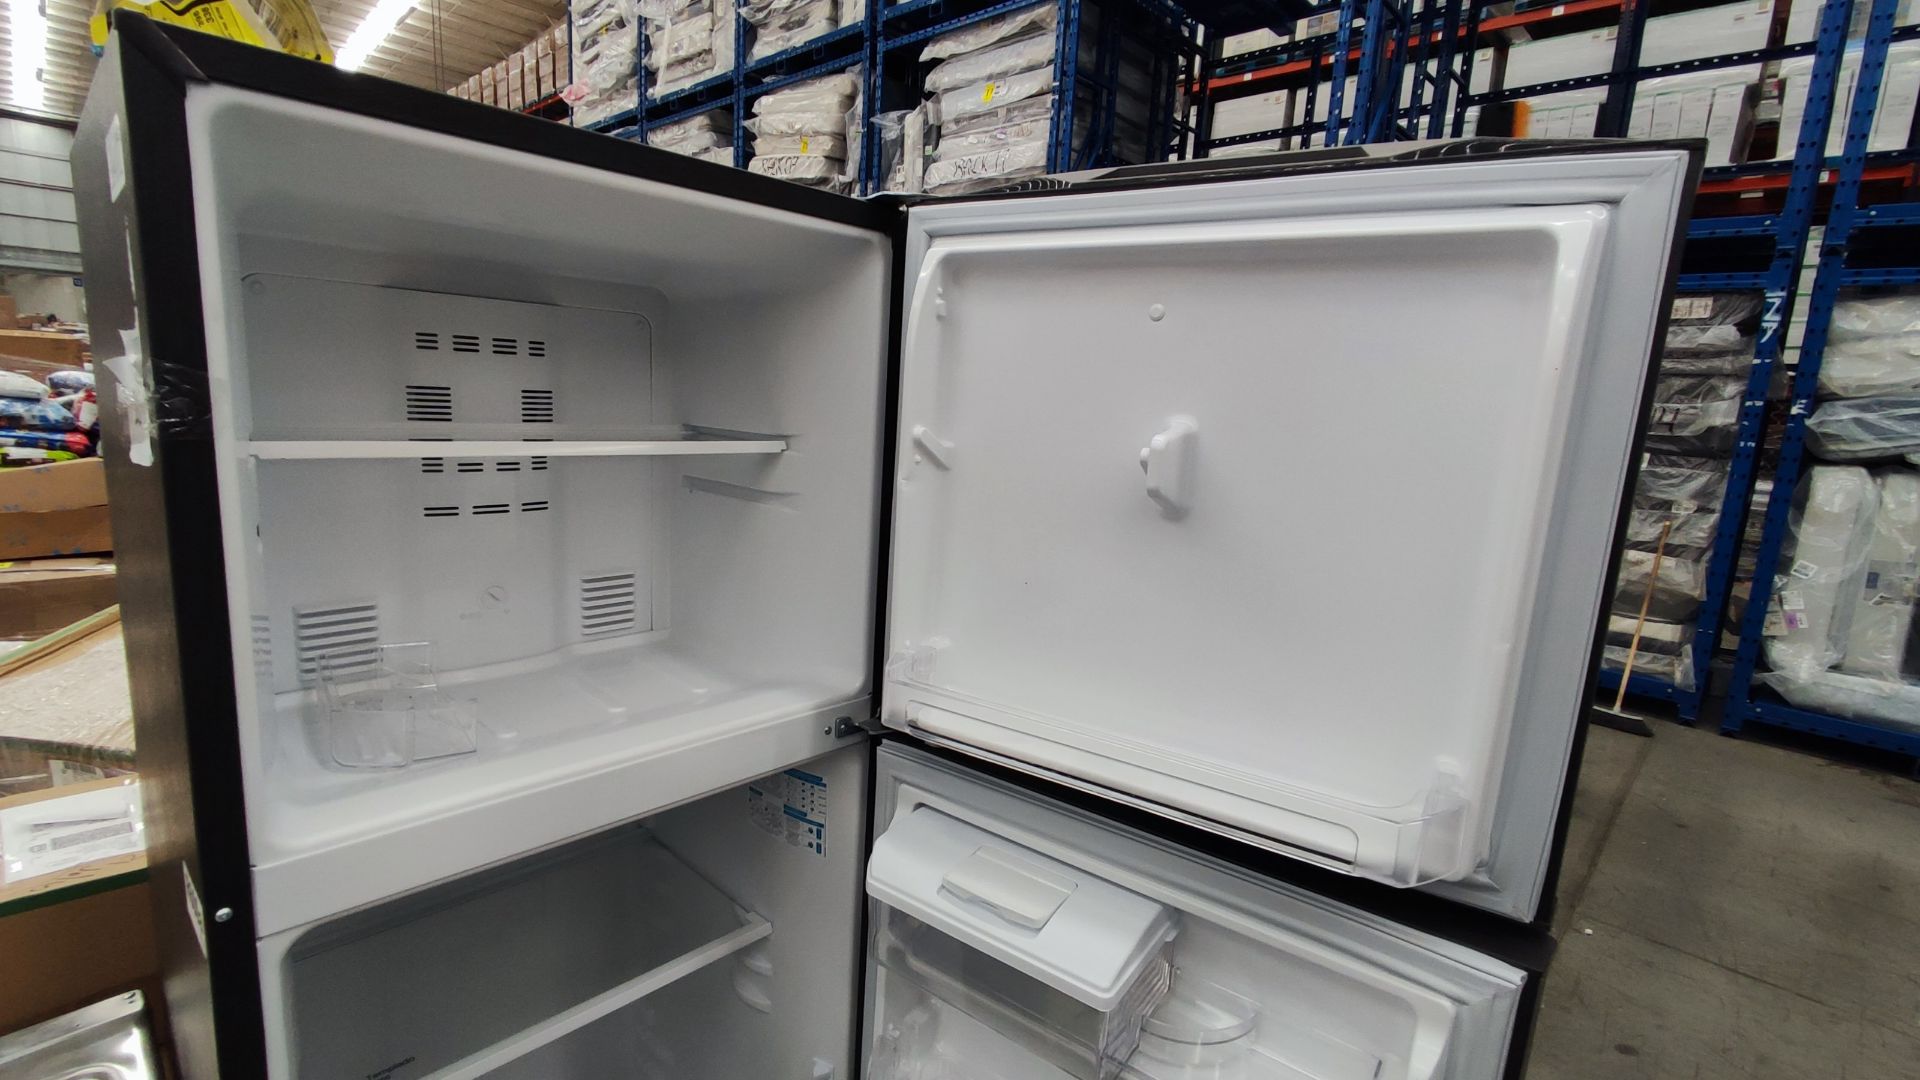 1 Refrigerador Marca Mabe, Modelo RMA300FJMR, Serie 2204B712240, Color Gris, Detalles Estéticos, Fa - Image 4 of 11